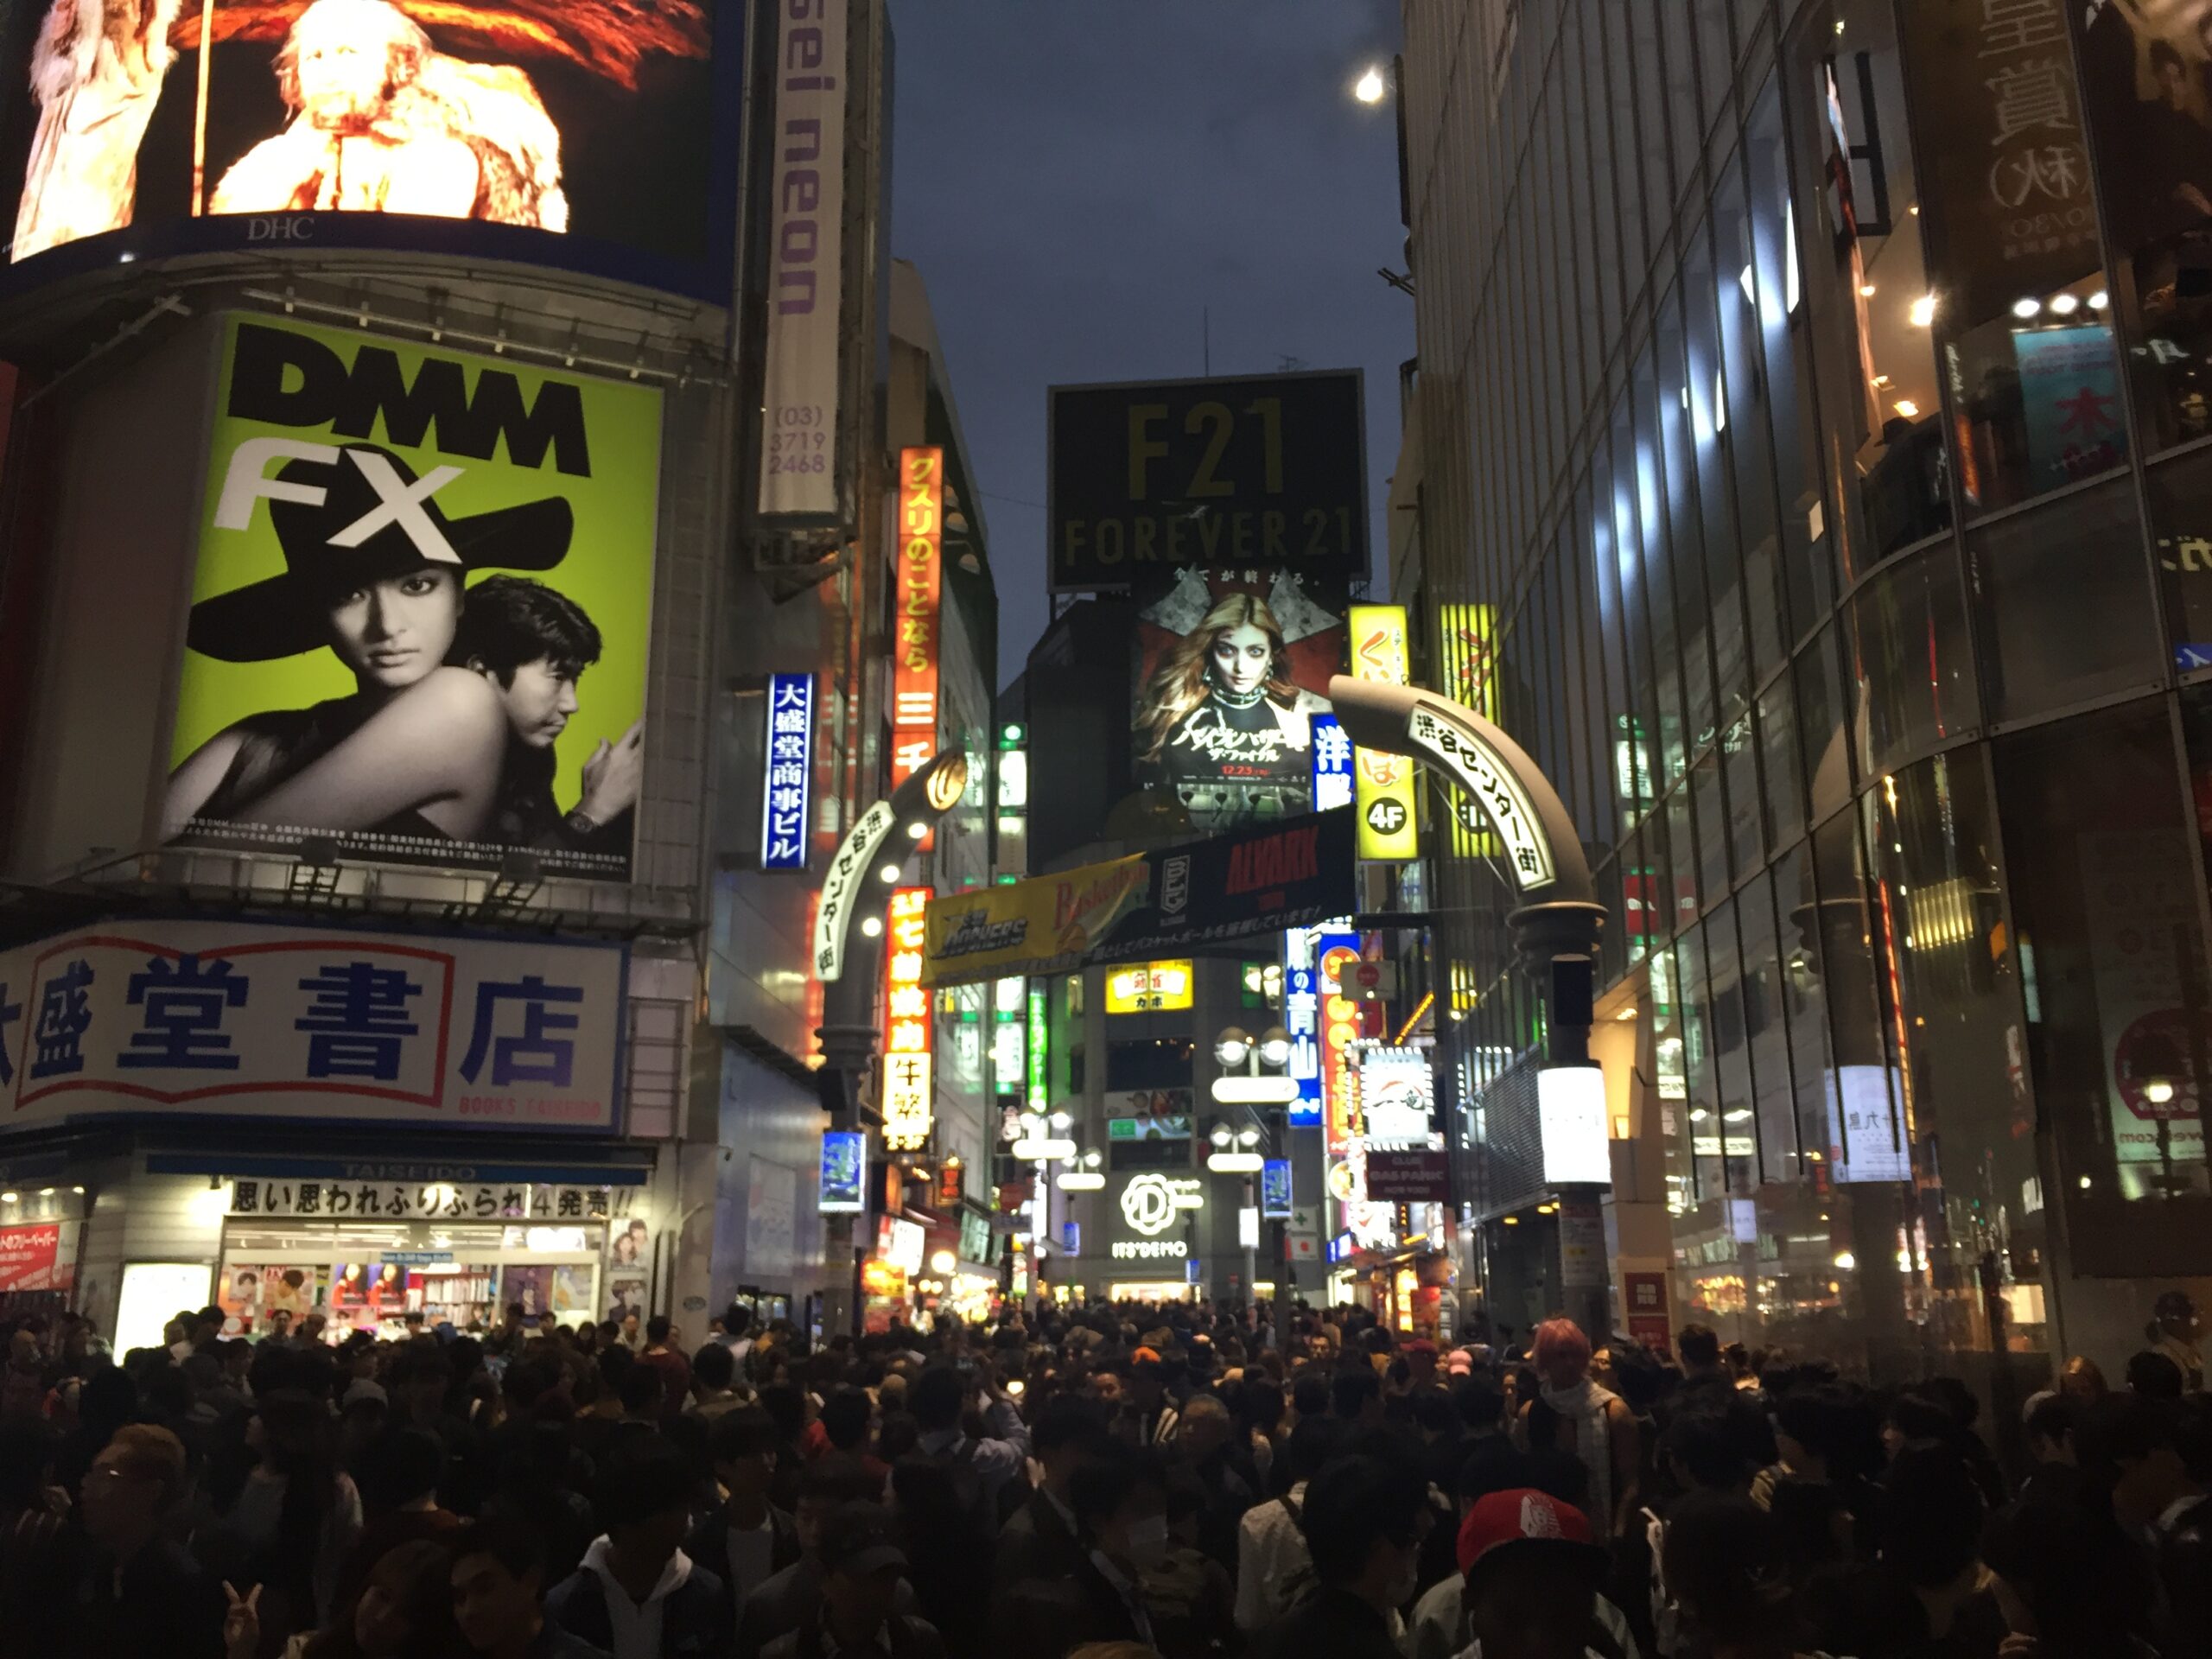 ハロウィンで混雑する渋谷。人は多かったけど混乱している感じは無かった。